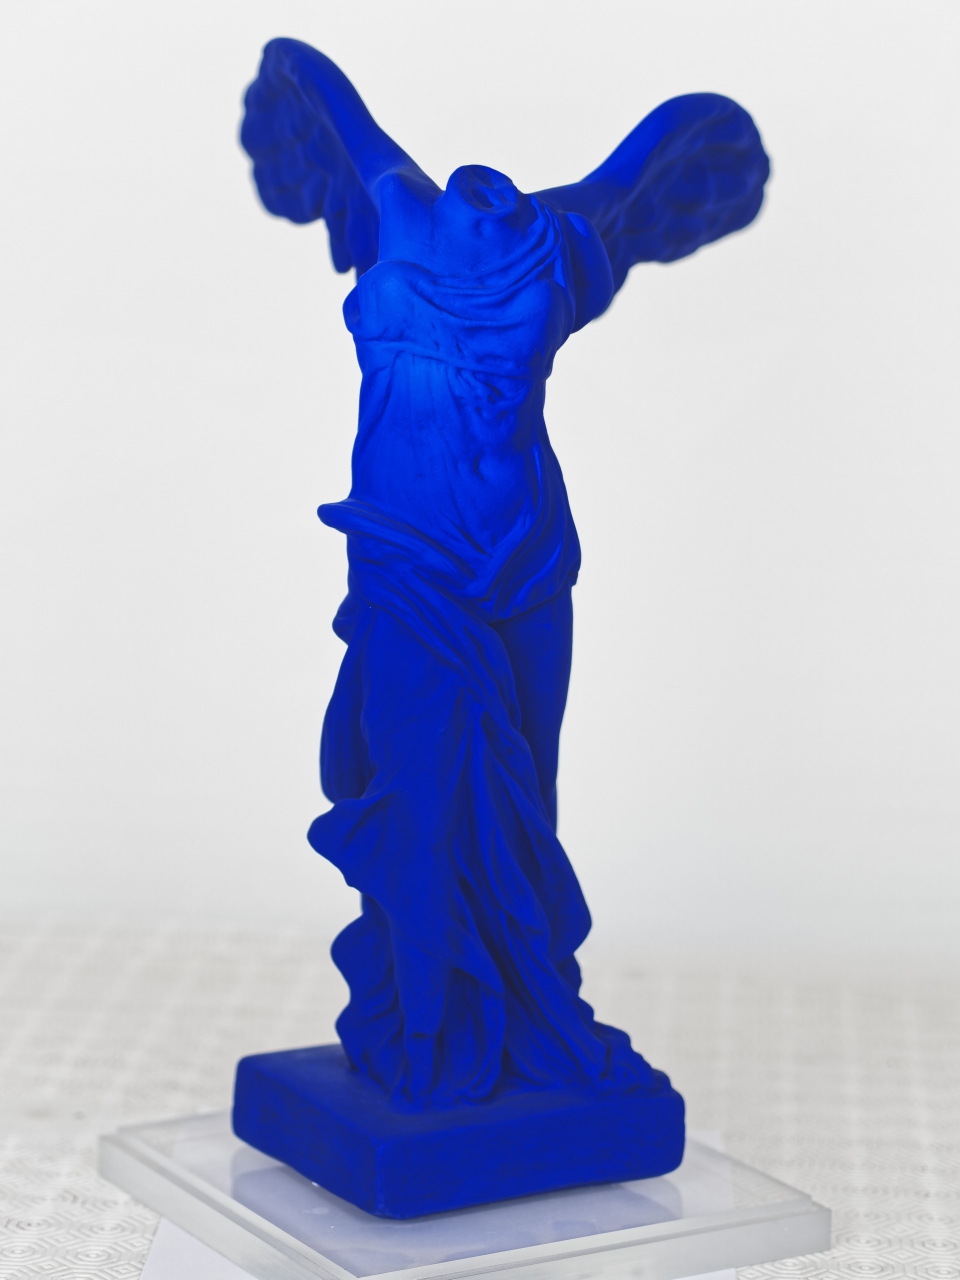 Victoire Bleue, Blue Victory, 40 cm